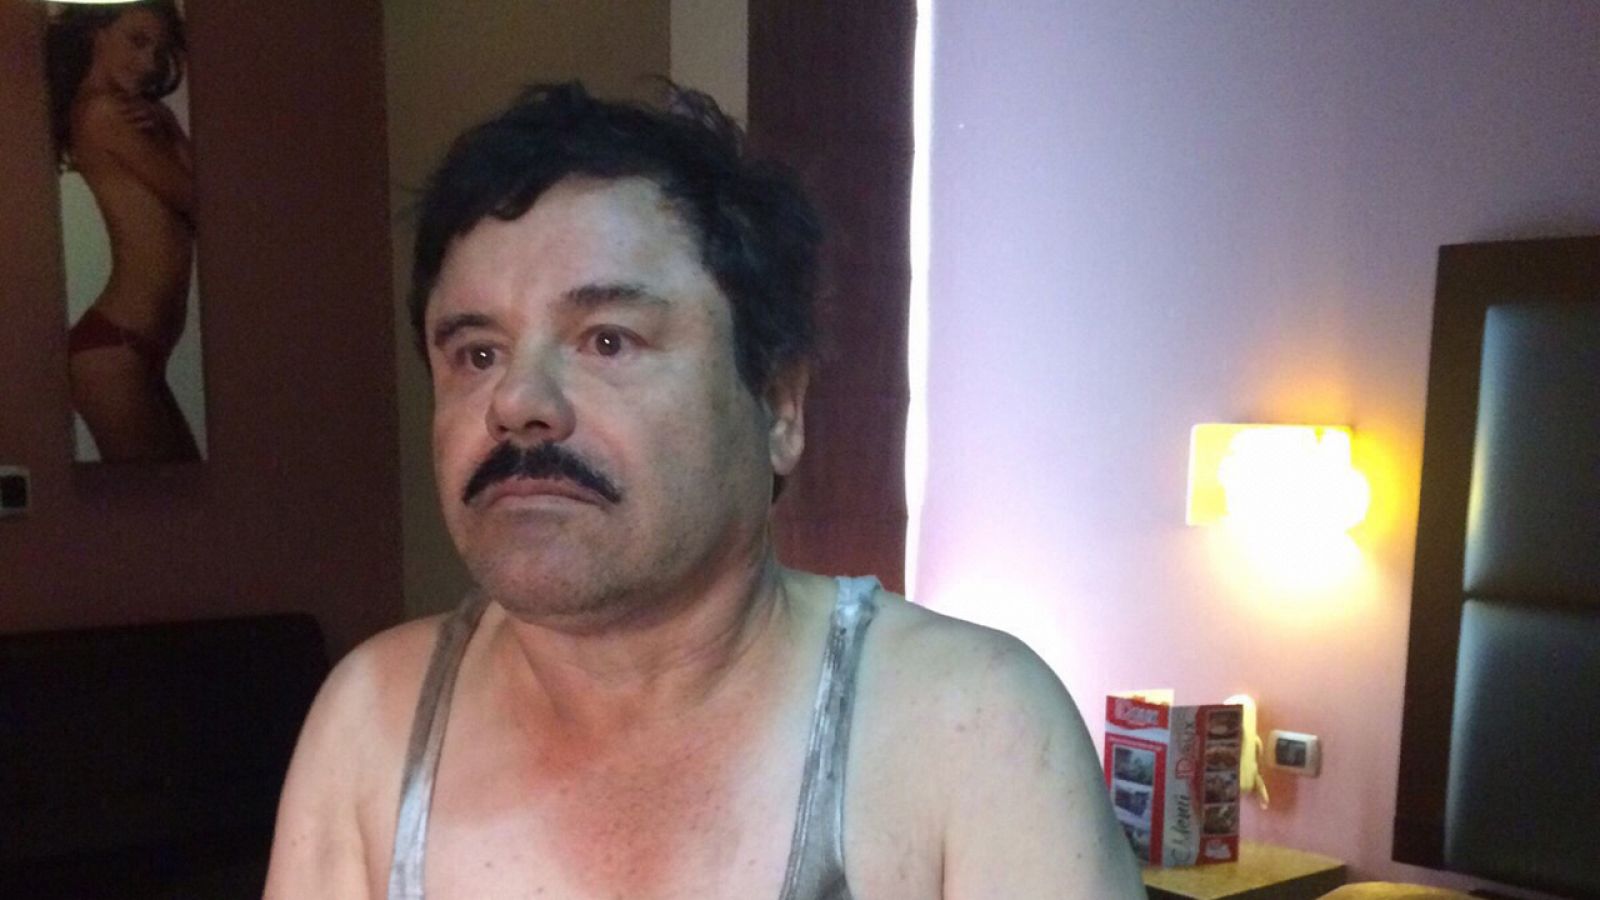 Primera imagen del narcotraficante Joaquín "El Chapo" Guzmán filtrada a medios locales